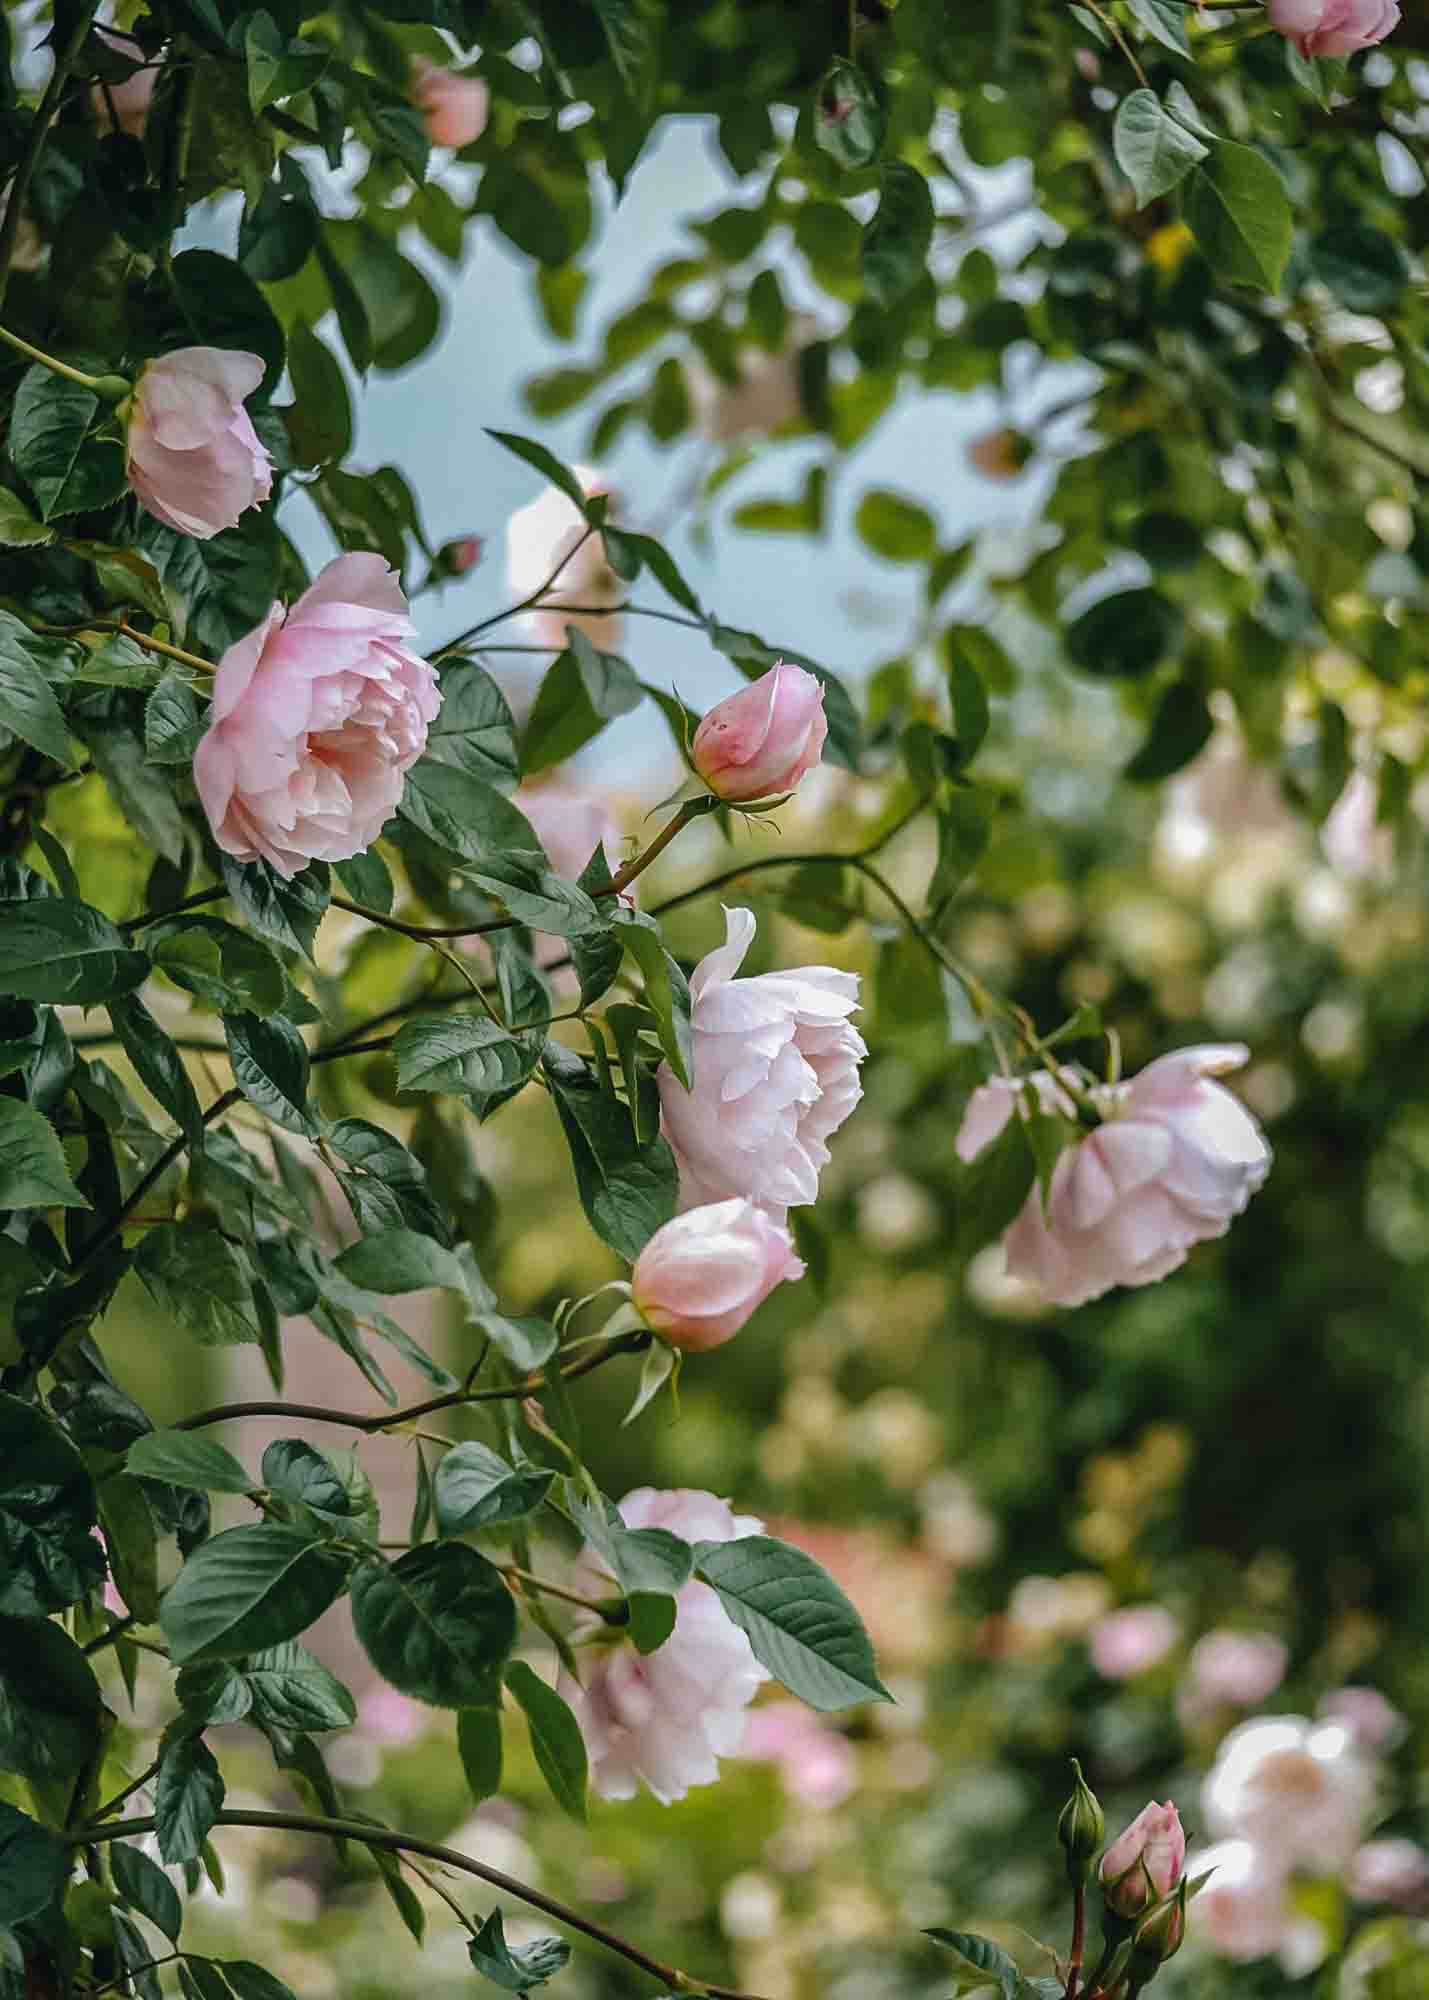 David Austin Roses - The Generous Gardener Rose